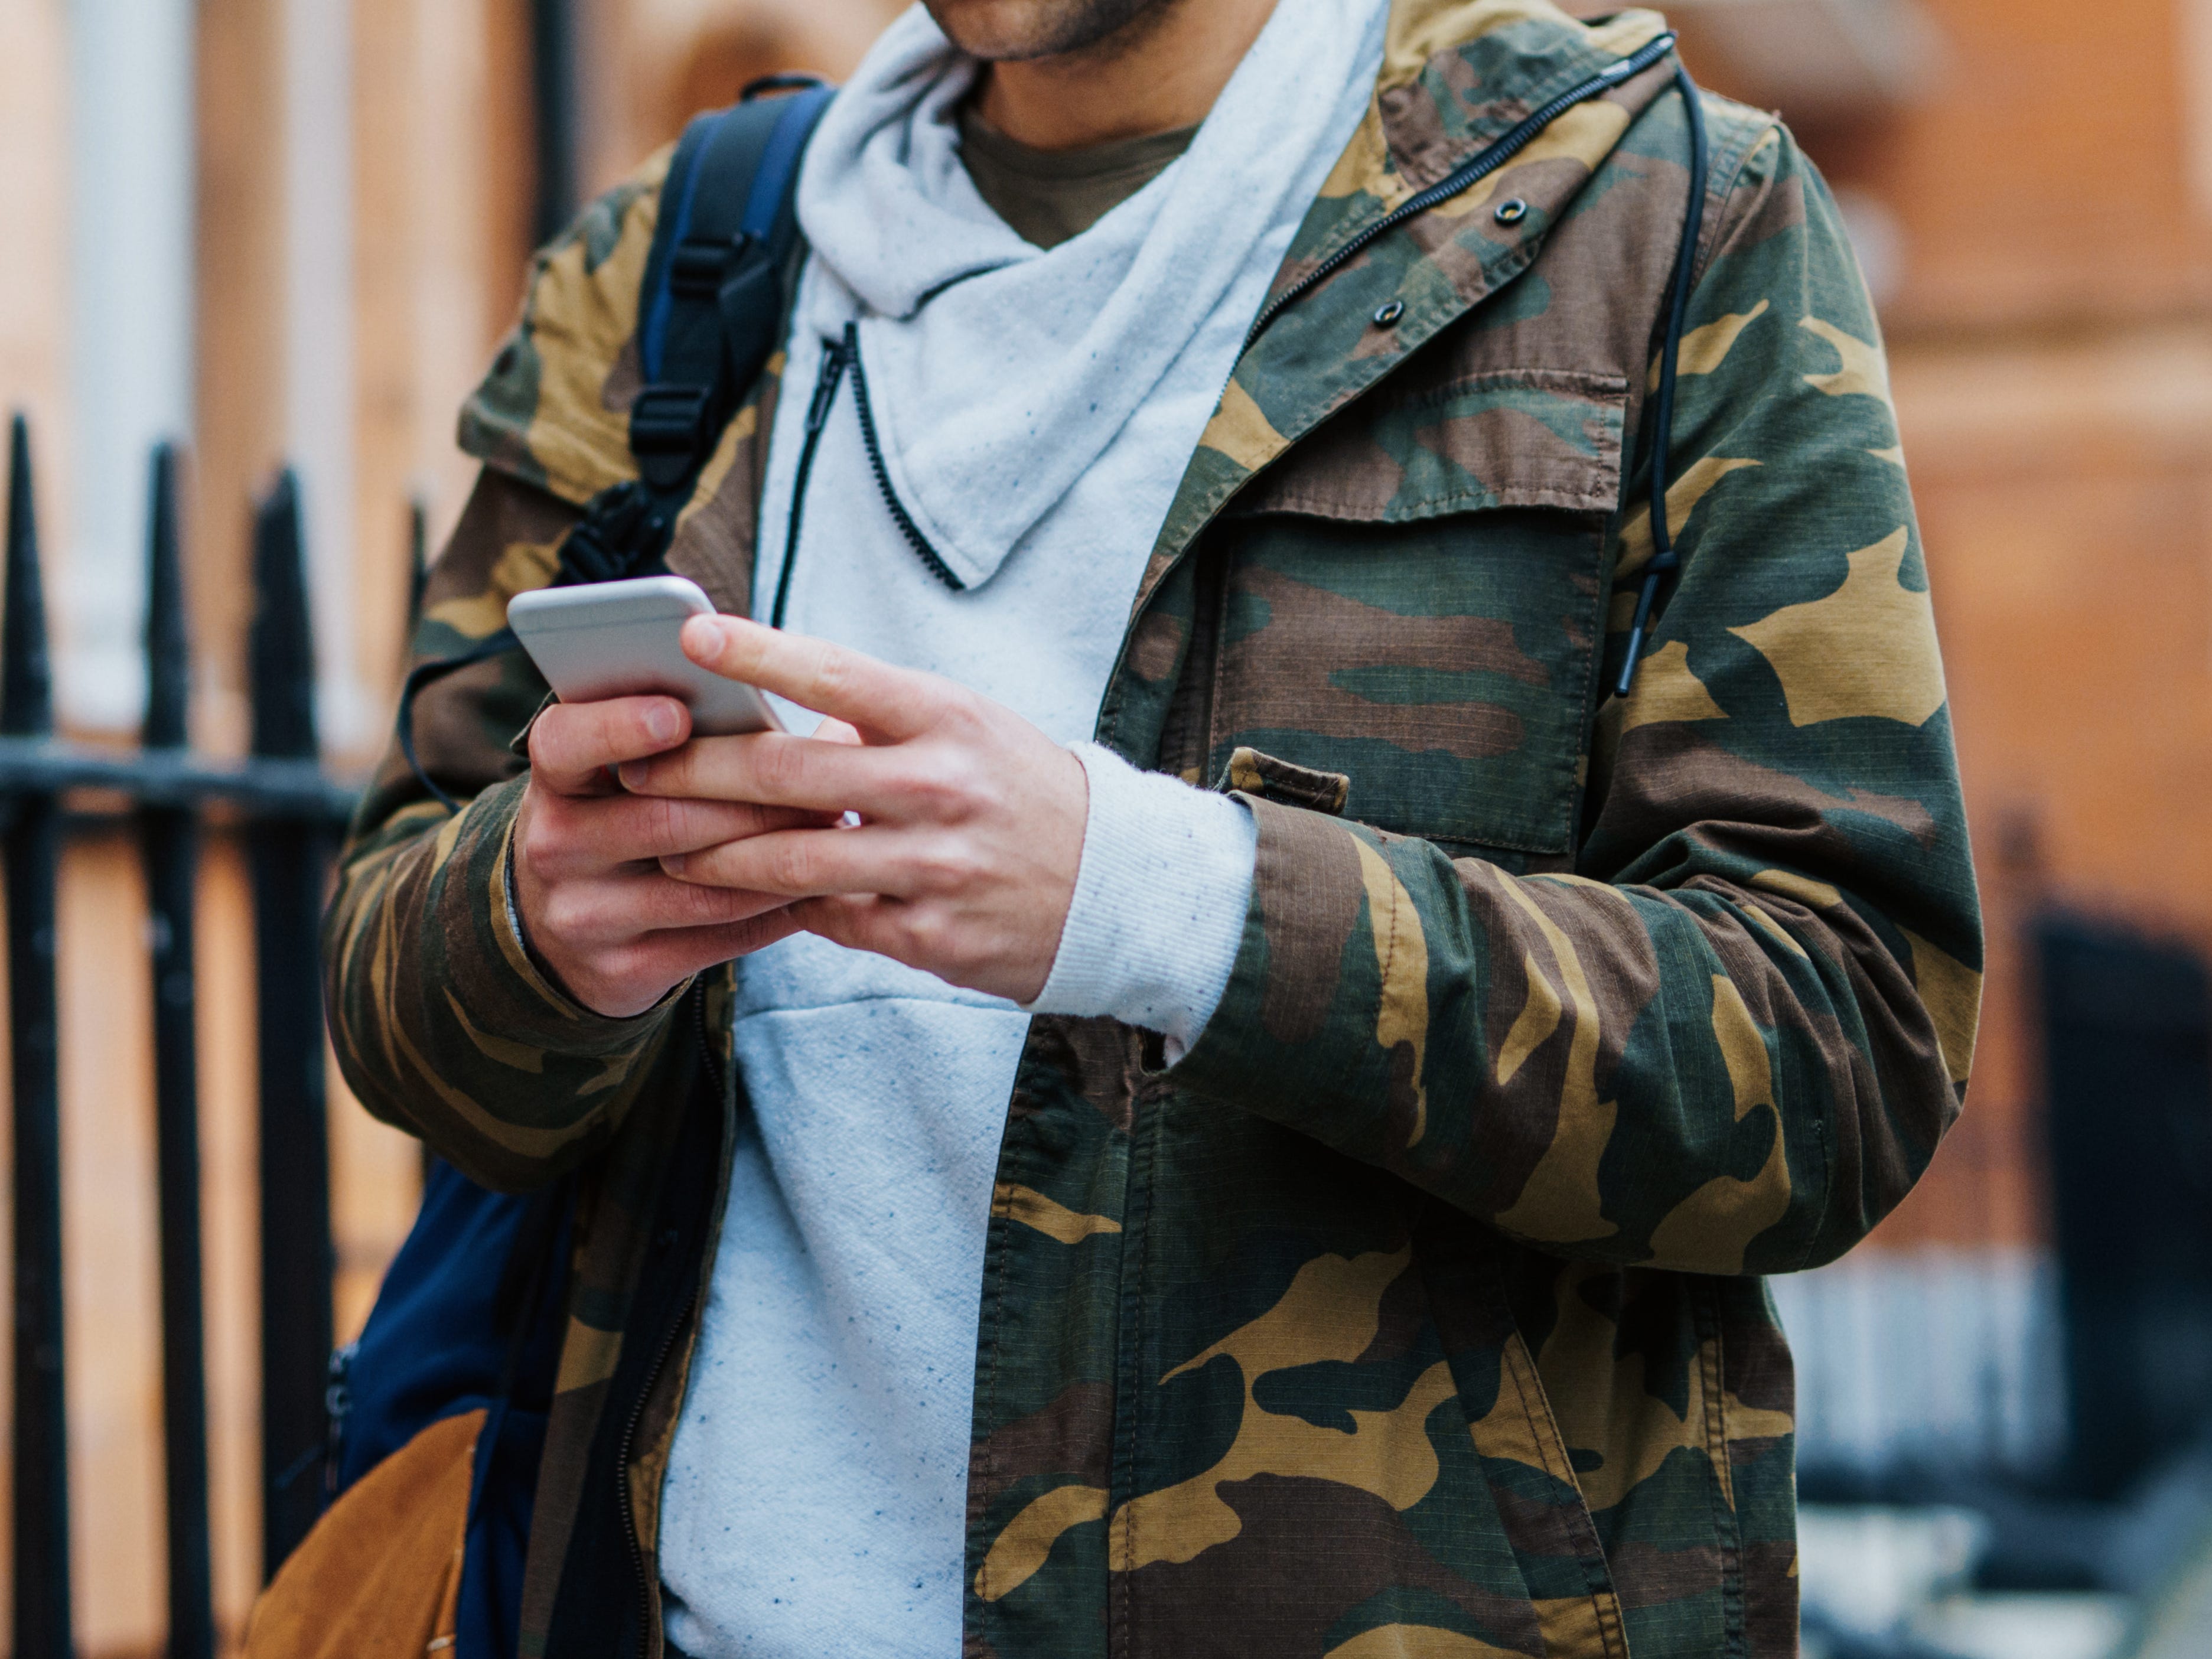 Mann, der eine Jacke mit Tarnmuster trägt, während er SMS schreibt und eine Straße entlang geht